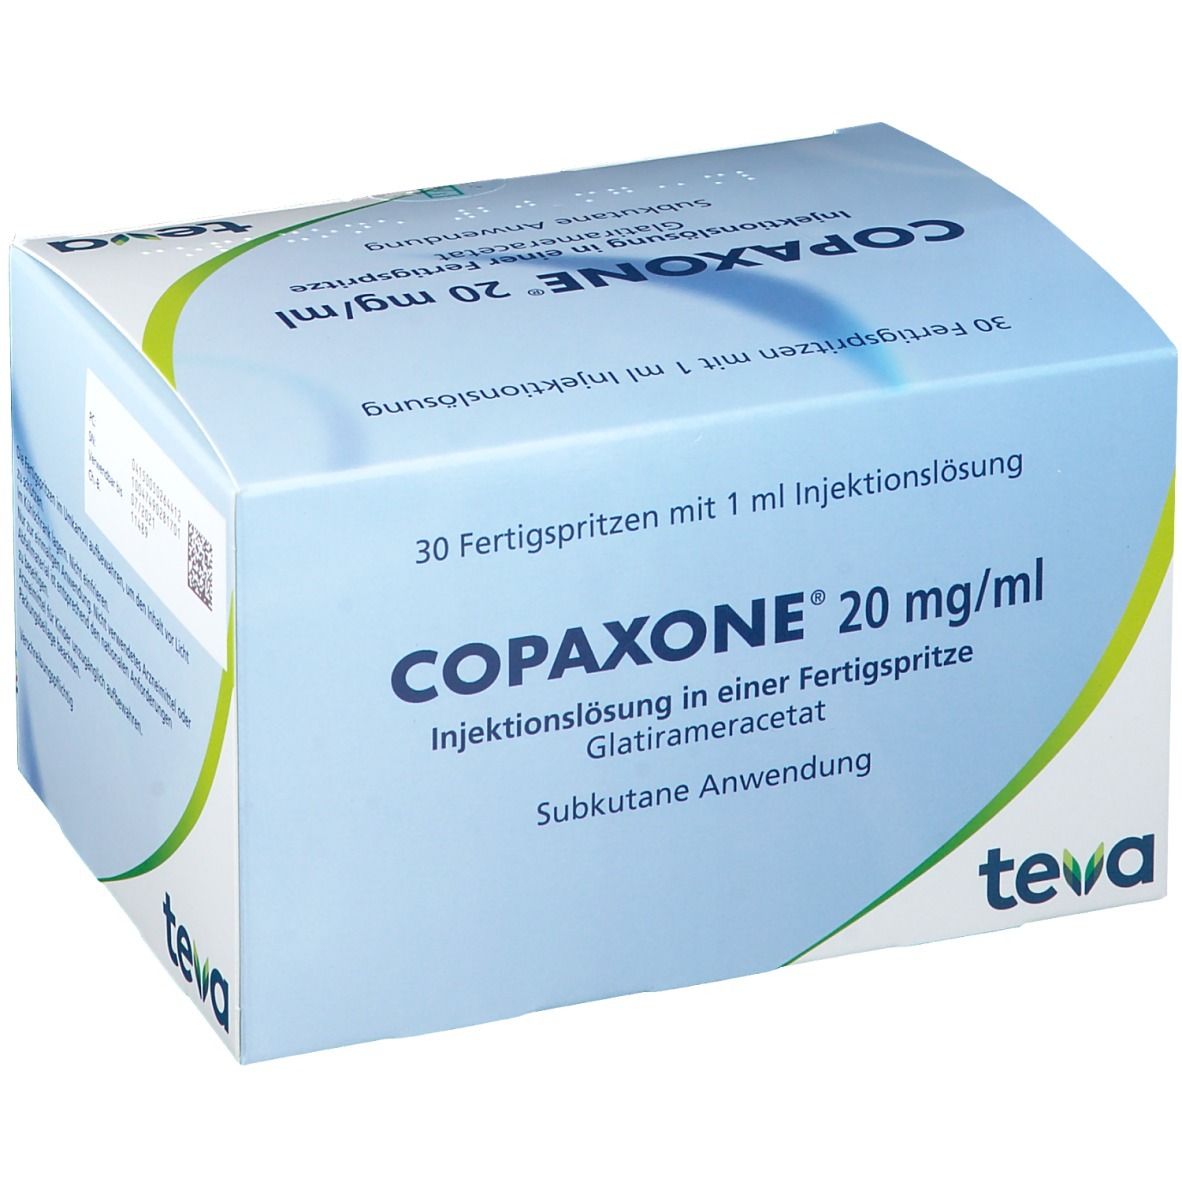 COPAXONE® 20 mg/ml